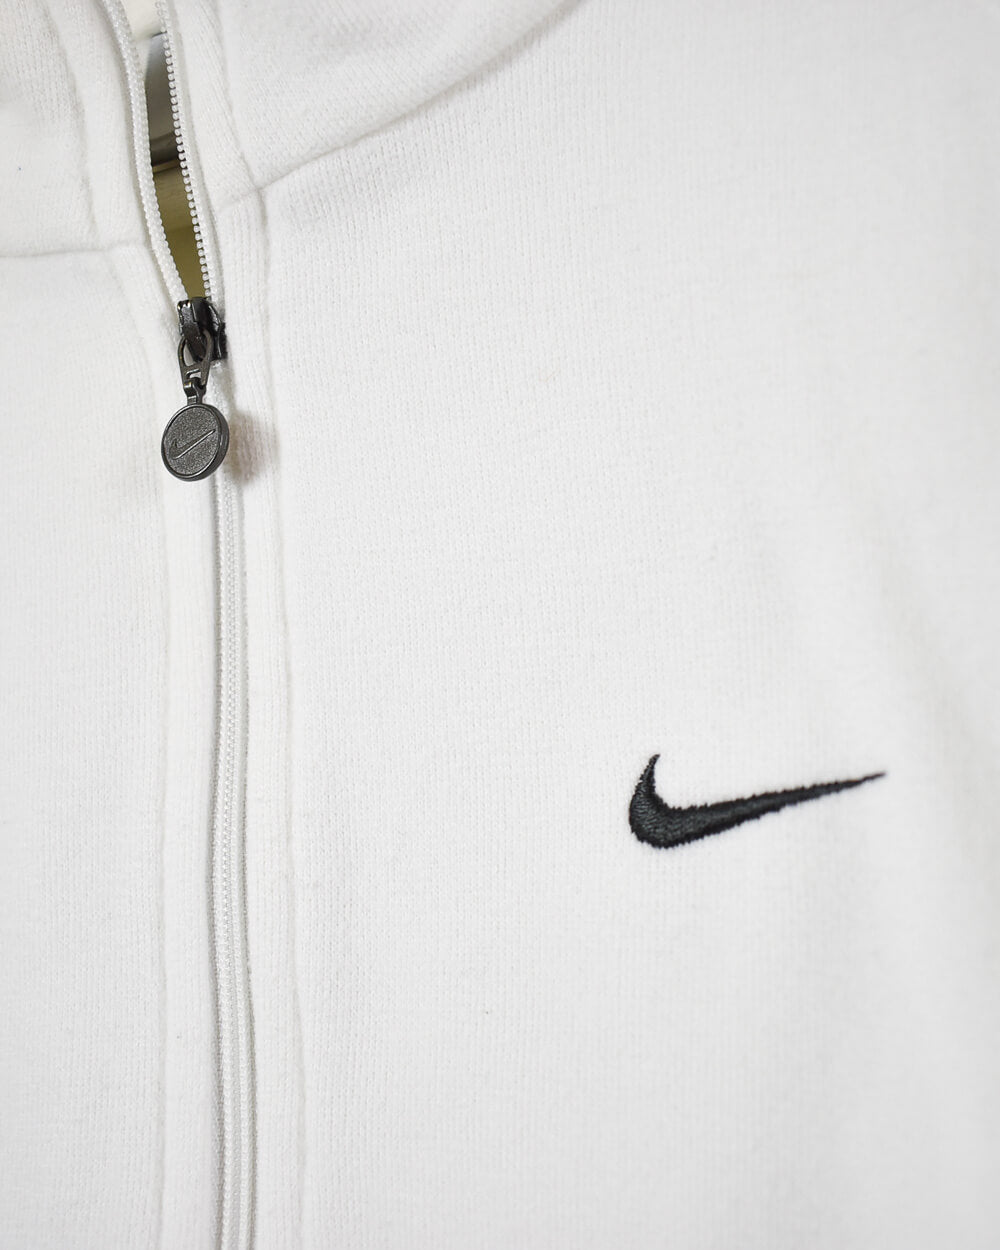 White Nike Women's 1/2 Zip Sweatshirt - Medium